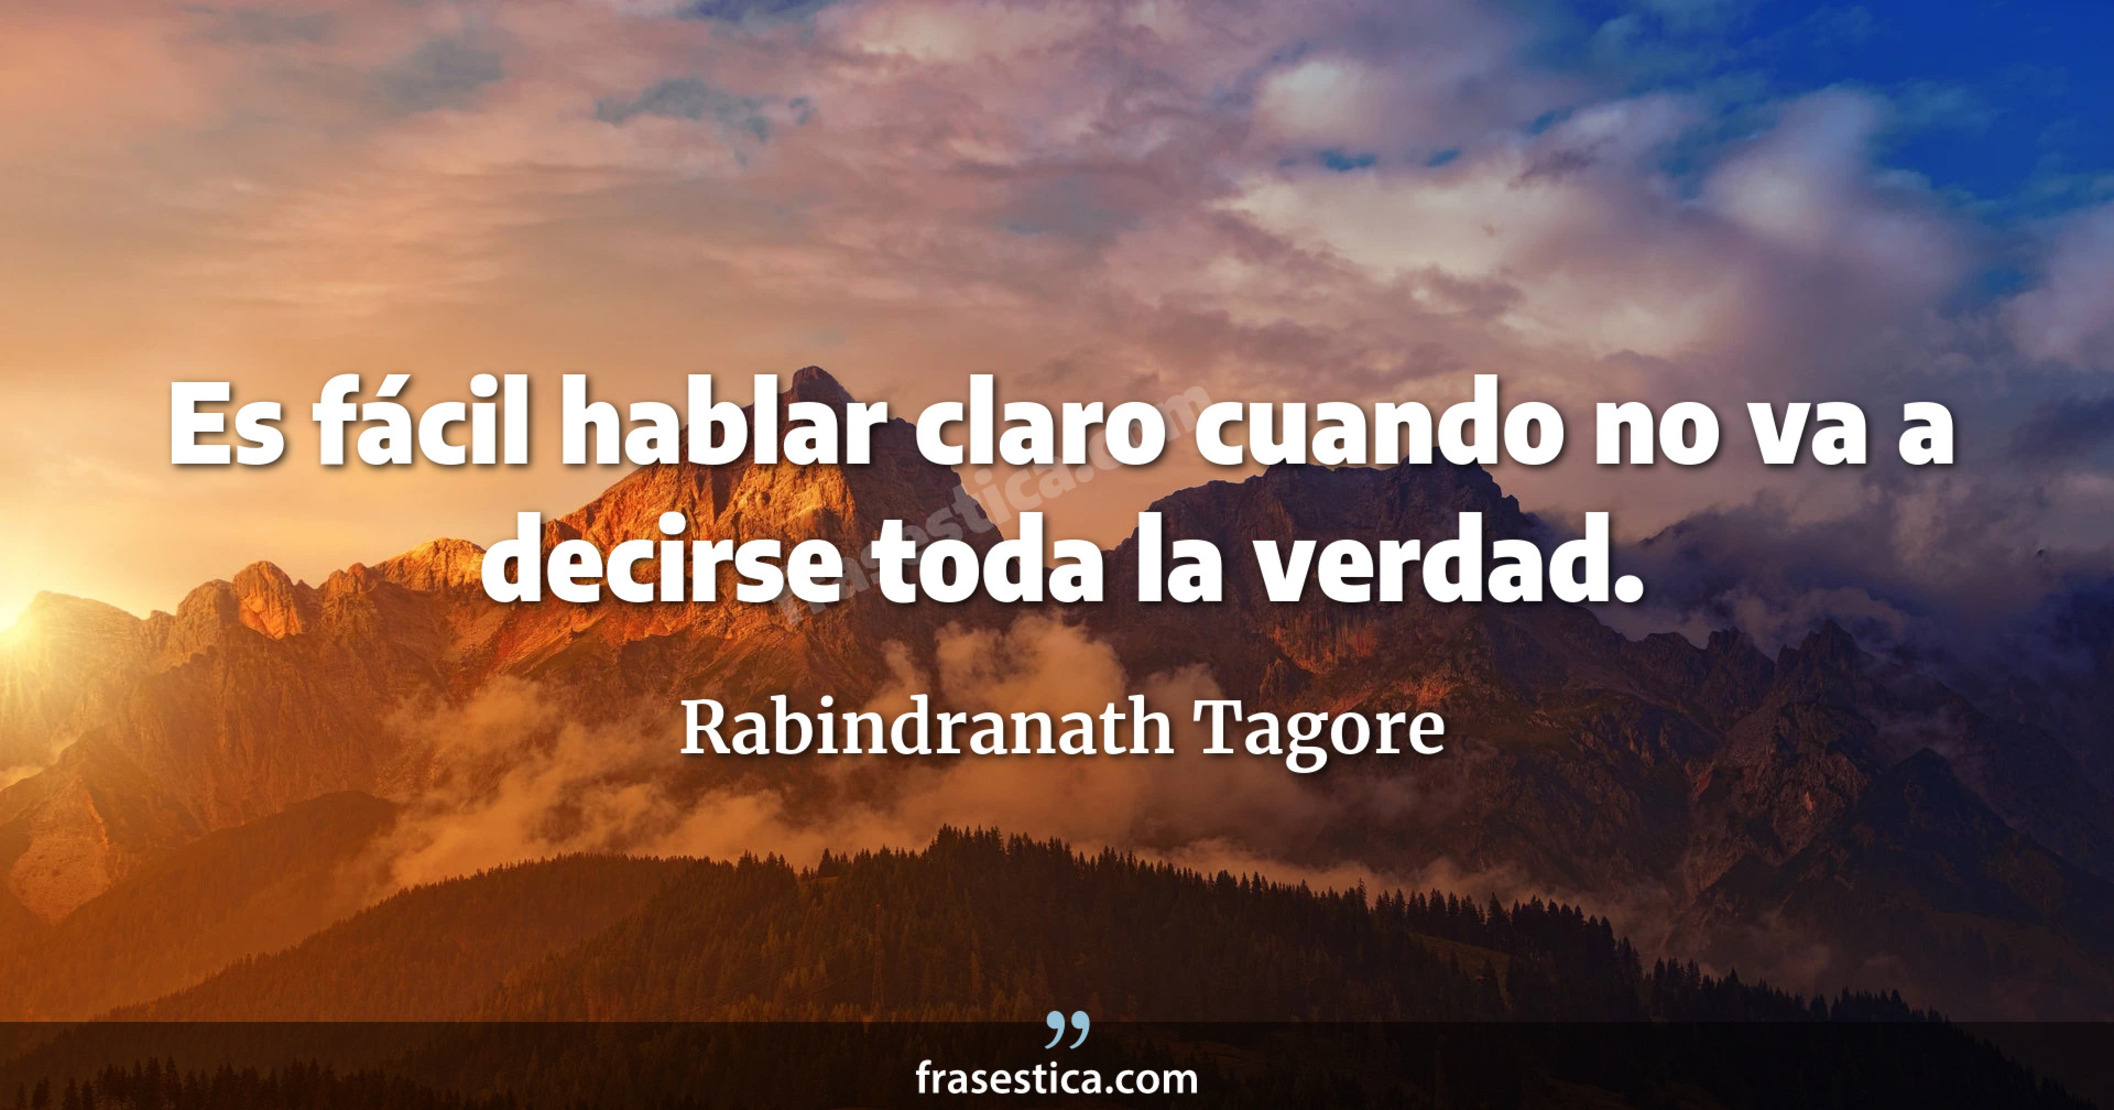 Es fácil hablar claro cuando no va a decirse toda la verdad. - Rabindranath Tagore